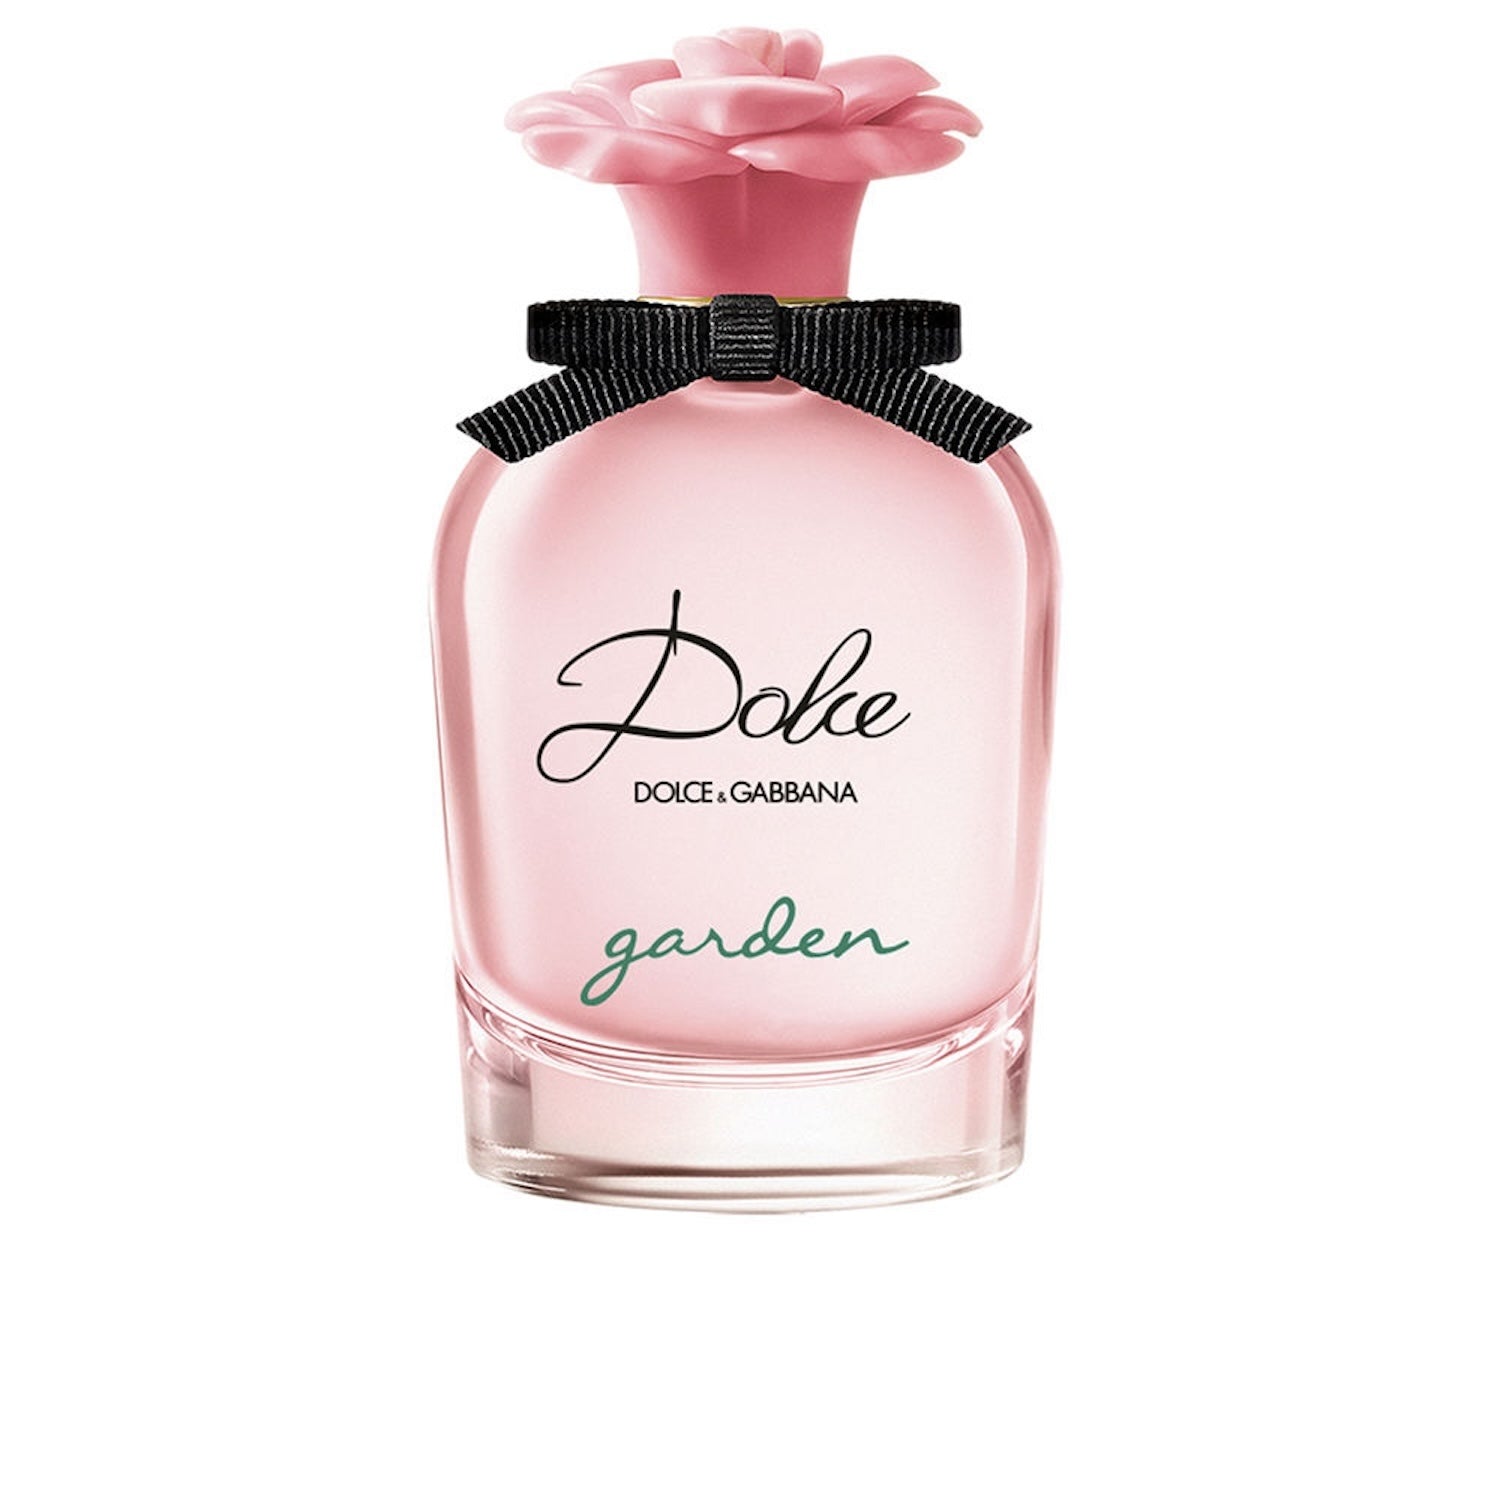 DOLCE  & GABBANA GARDEN Eau de Parfum Spray